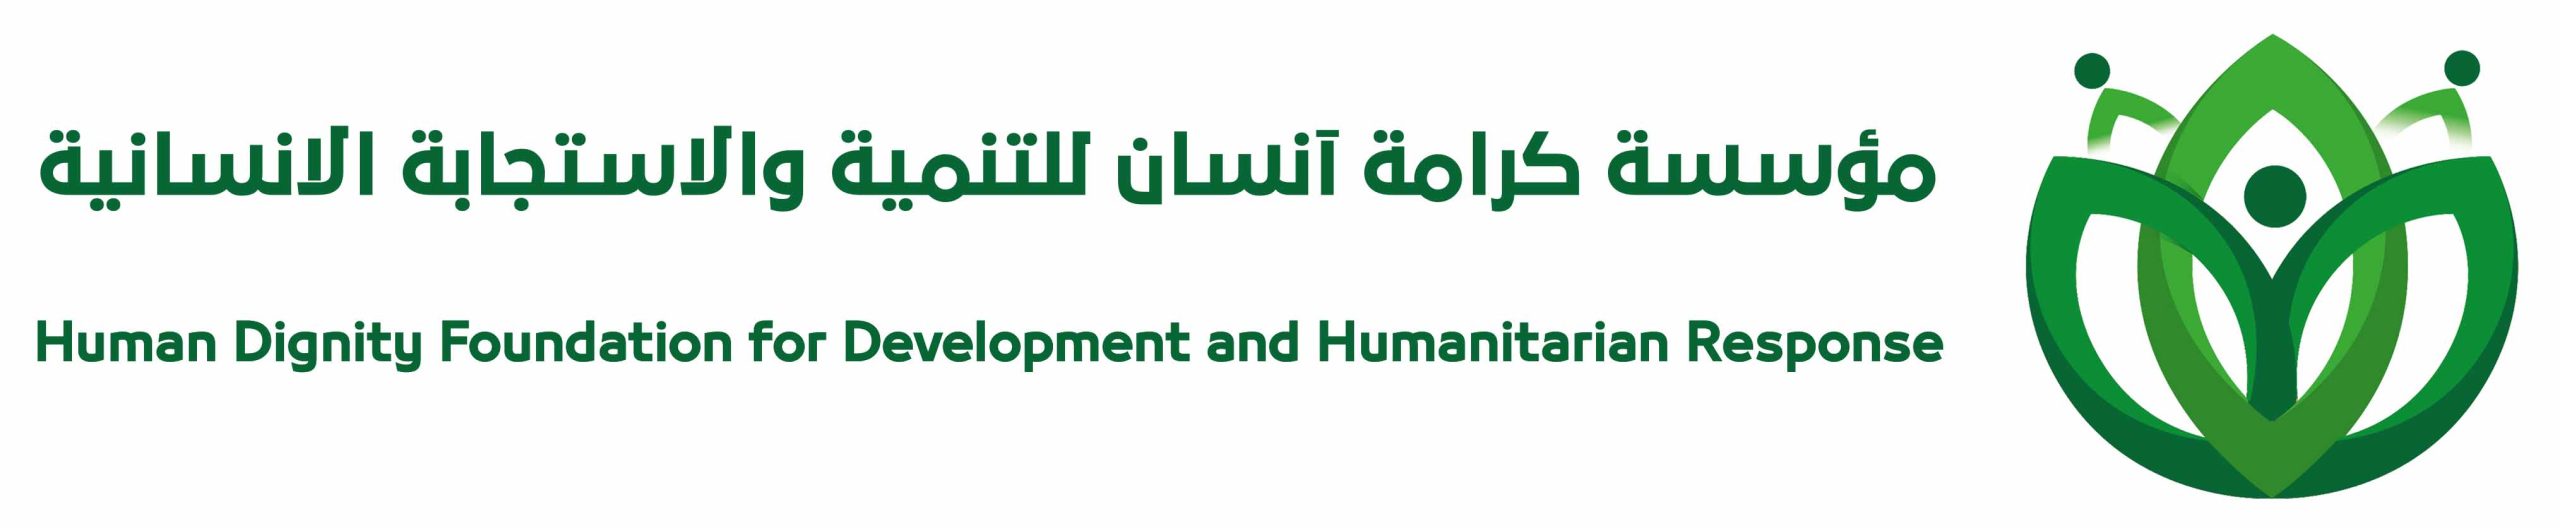 مؤسسة كرامة إنسان للتنمية والاستجابة الإنسانية